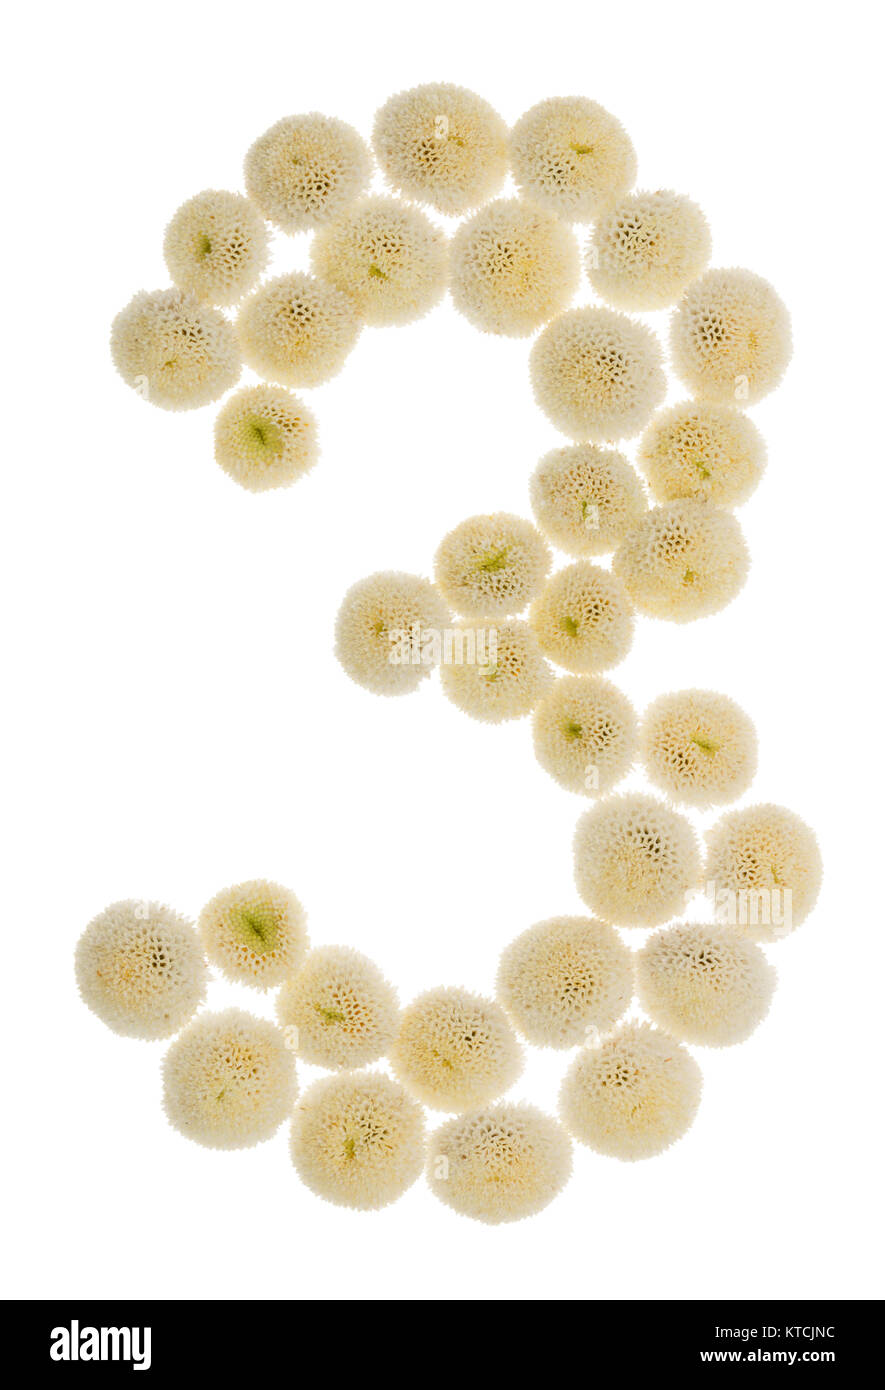 Chiffre arabe 3, trois, à partir de crème fleurs de chrysanthème, isolé sur fond blanc Banque D'Images